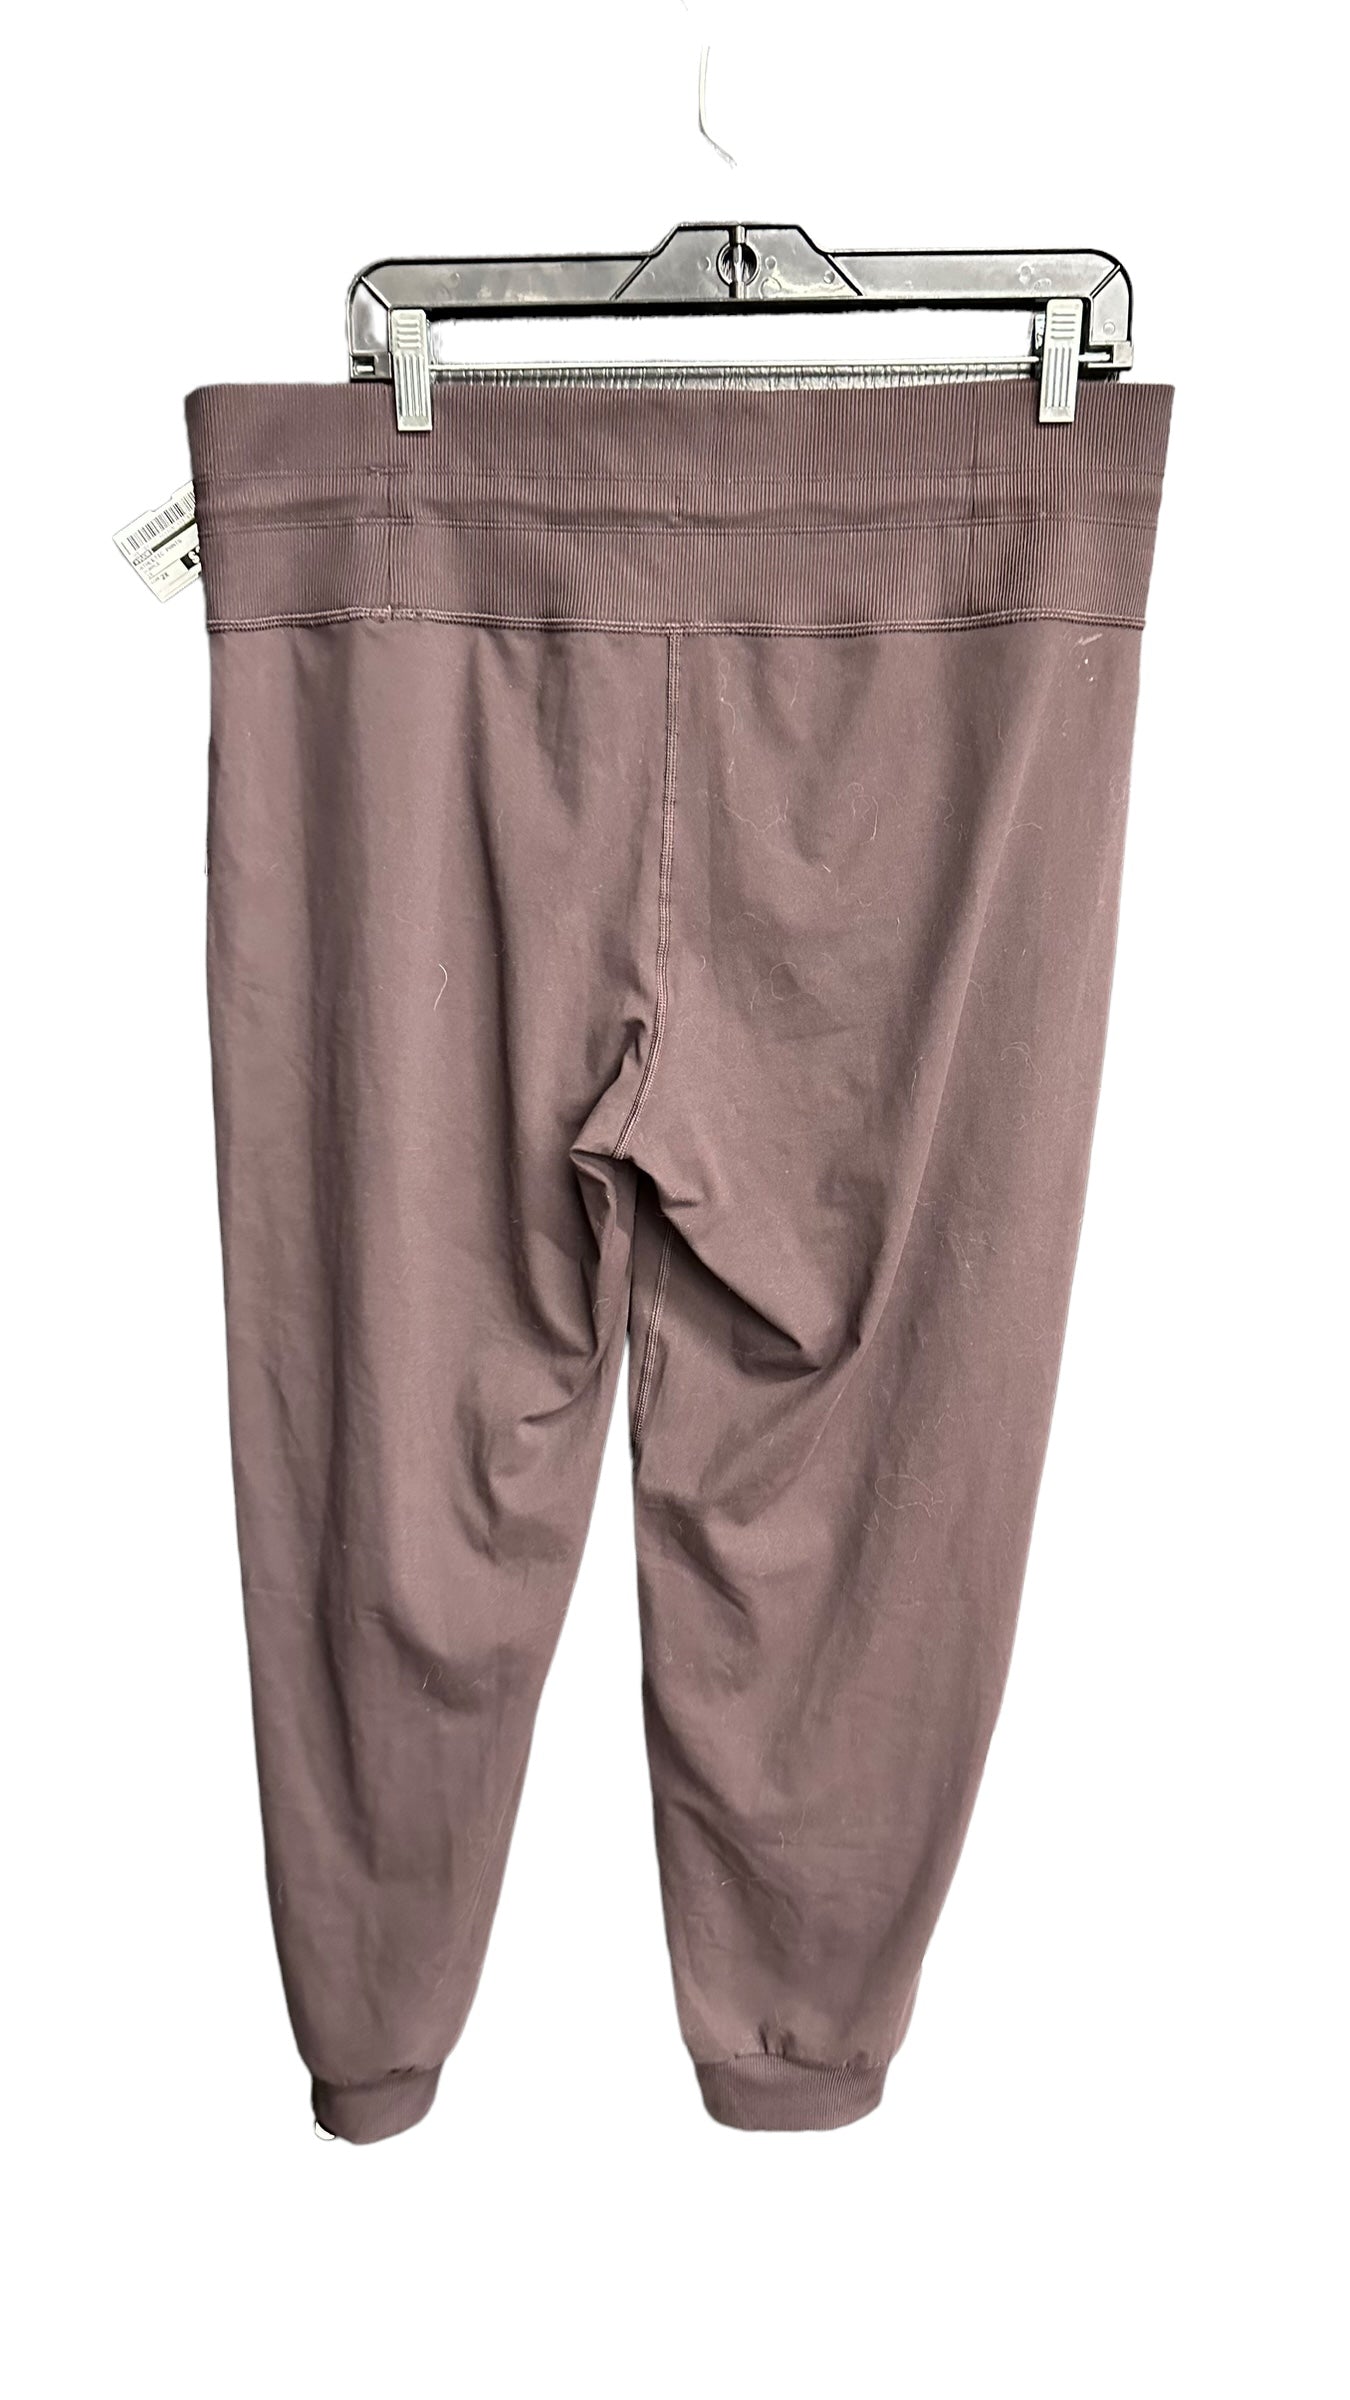 Athletic Pants By Vuori  Size: 2x